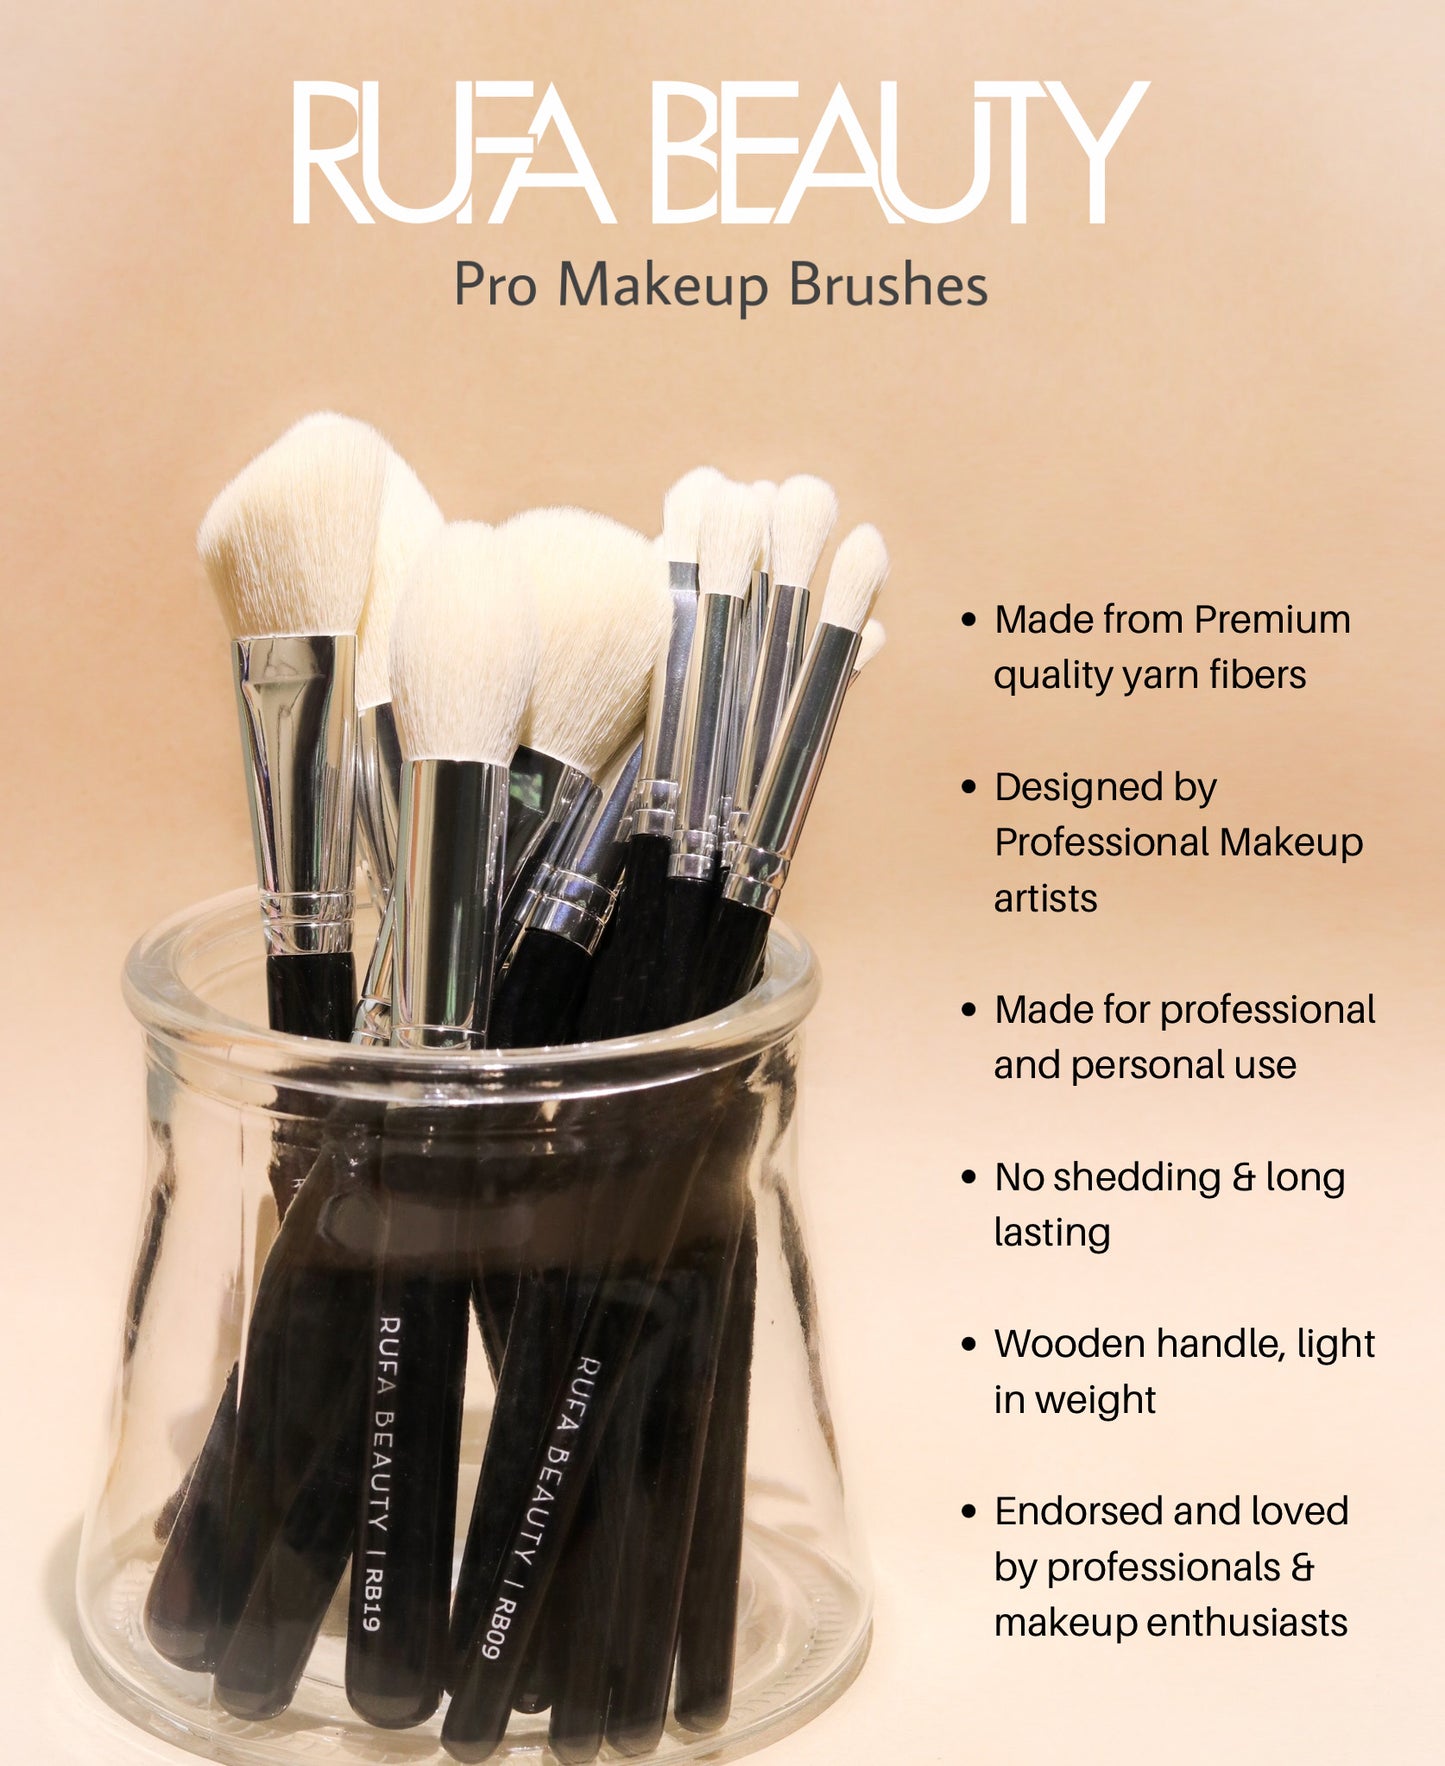 Pro Makeup Brushes - 25 Face + Eye brushes